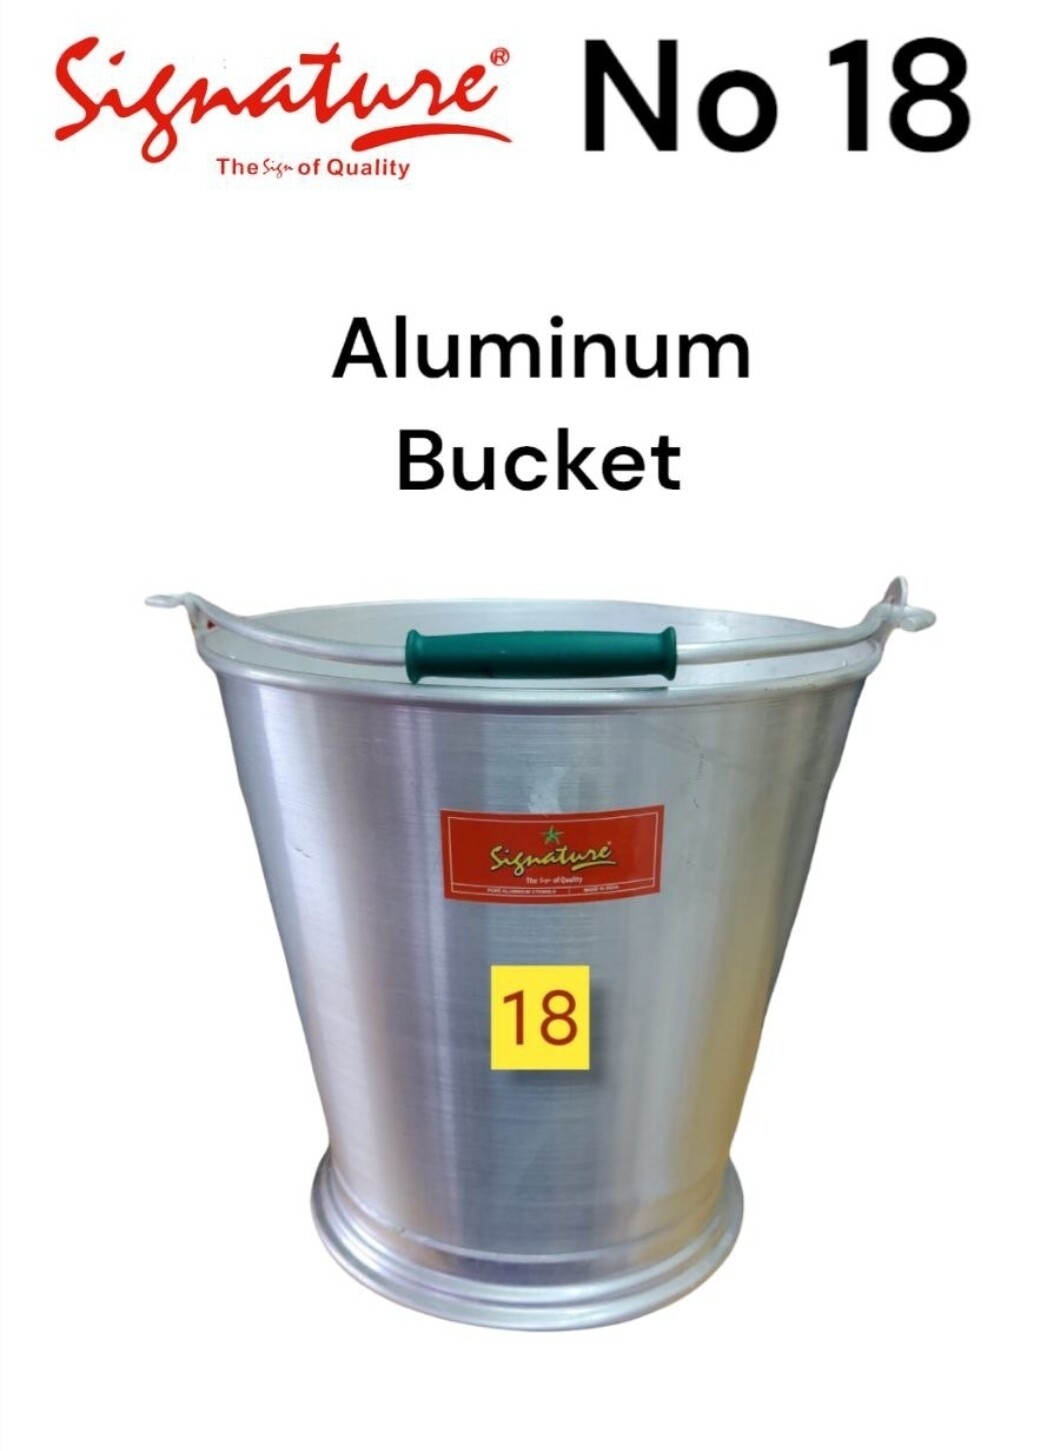 Signature aluminium bucket no 18